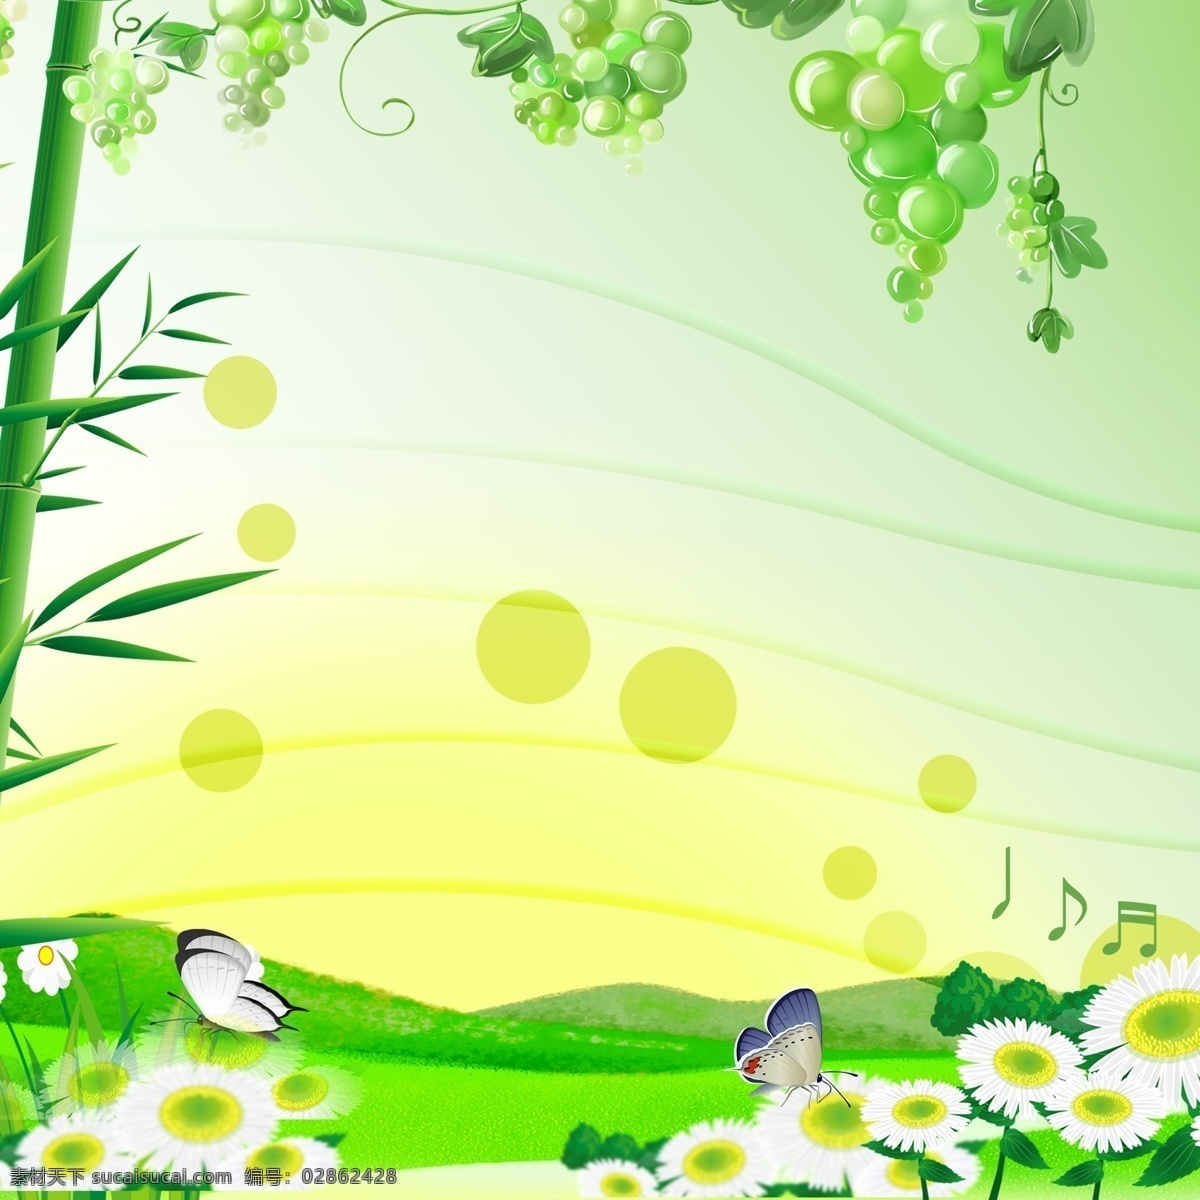 竹子 葡萄 花蝶 绿色 背景 线条 光圈